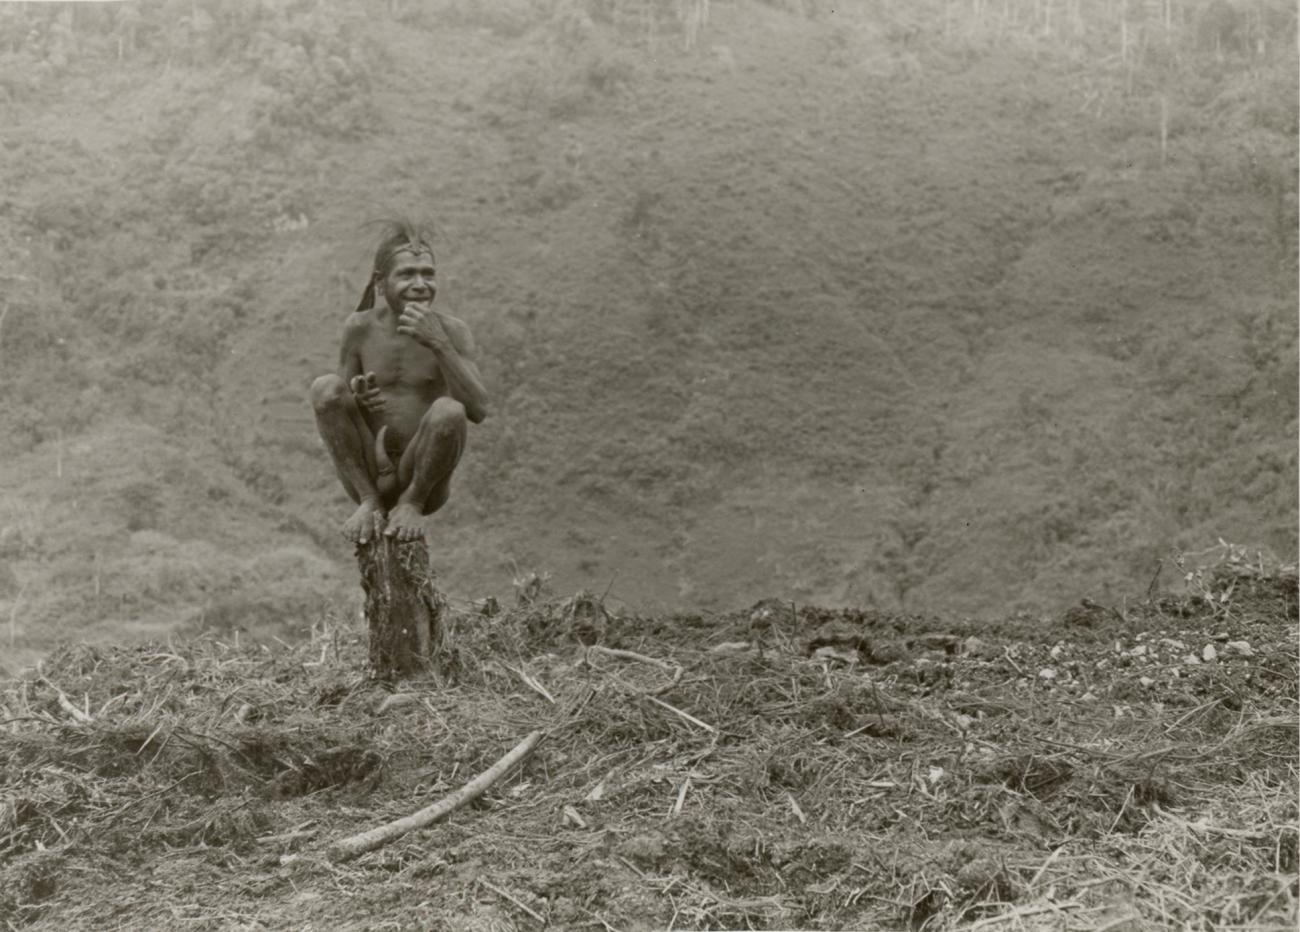 BD/326/16 - 
Inwoner van de Abmisibil-vallei in het Sterrengebergte zittend op een boomstronk
